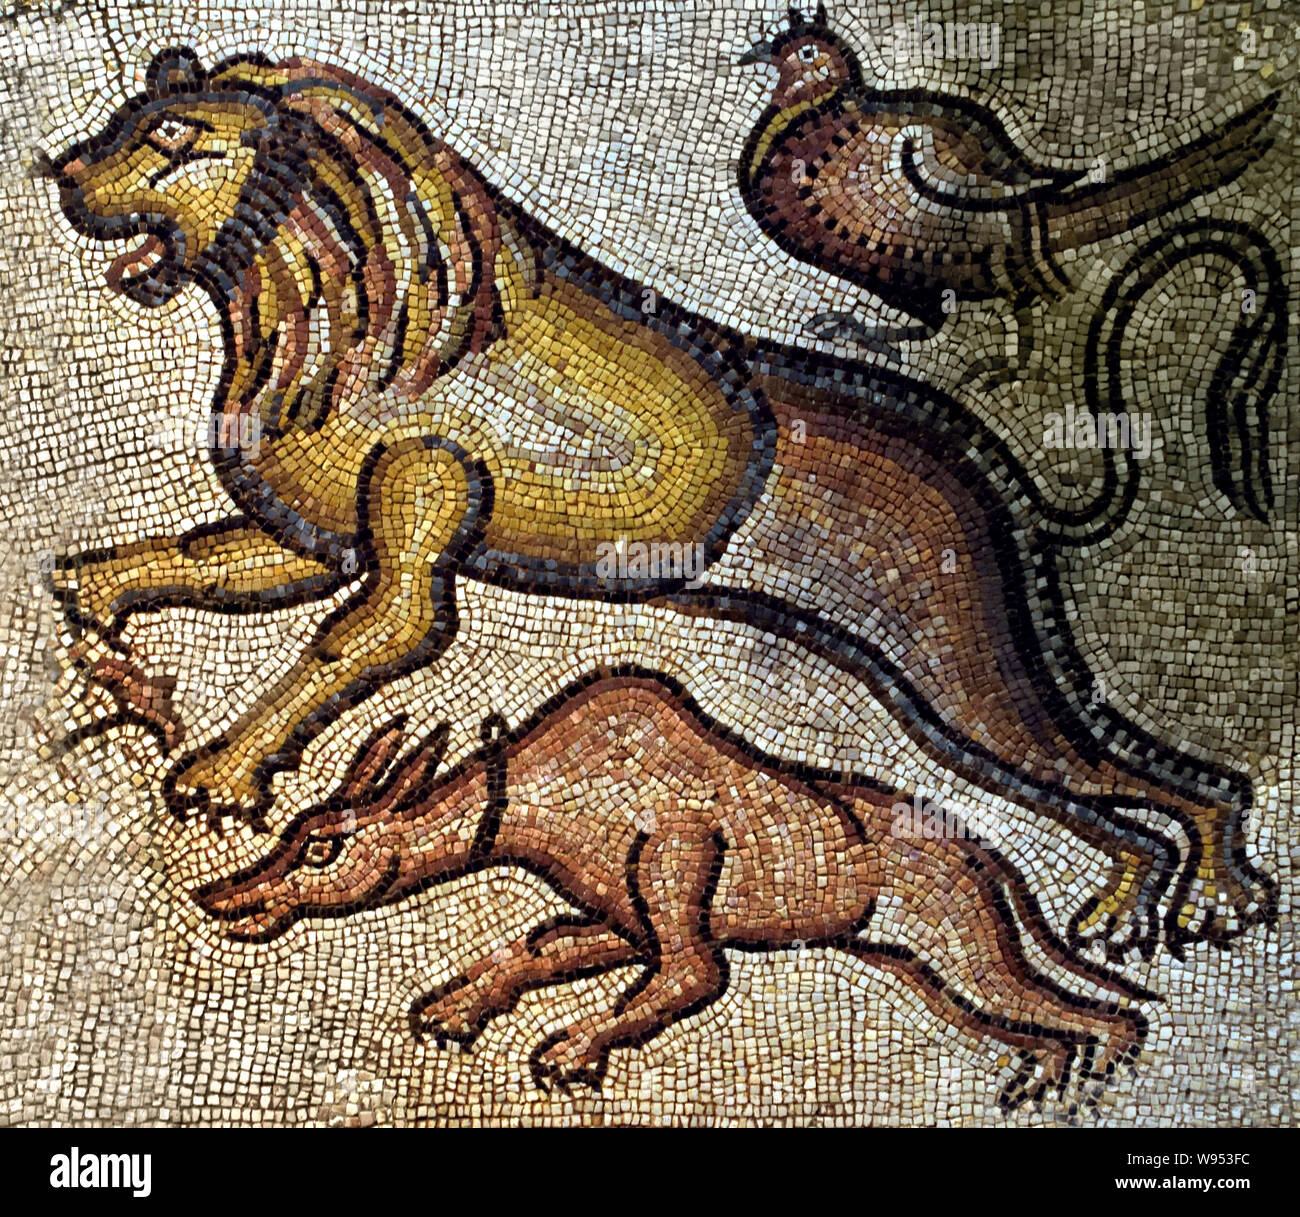 Tiere, Östliches Mittelmeer 5./6. Jahrhundert. Mosaik-Würfel aus Marmor und Kalkstein im 5.-6. Jh. nach Chr. Stockfoto